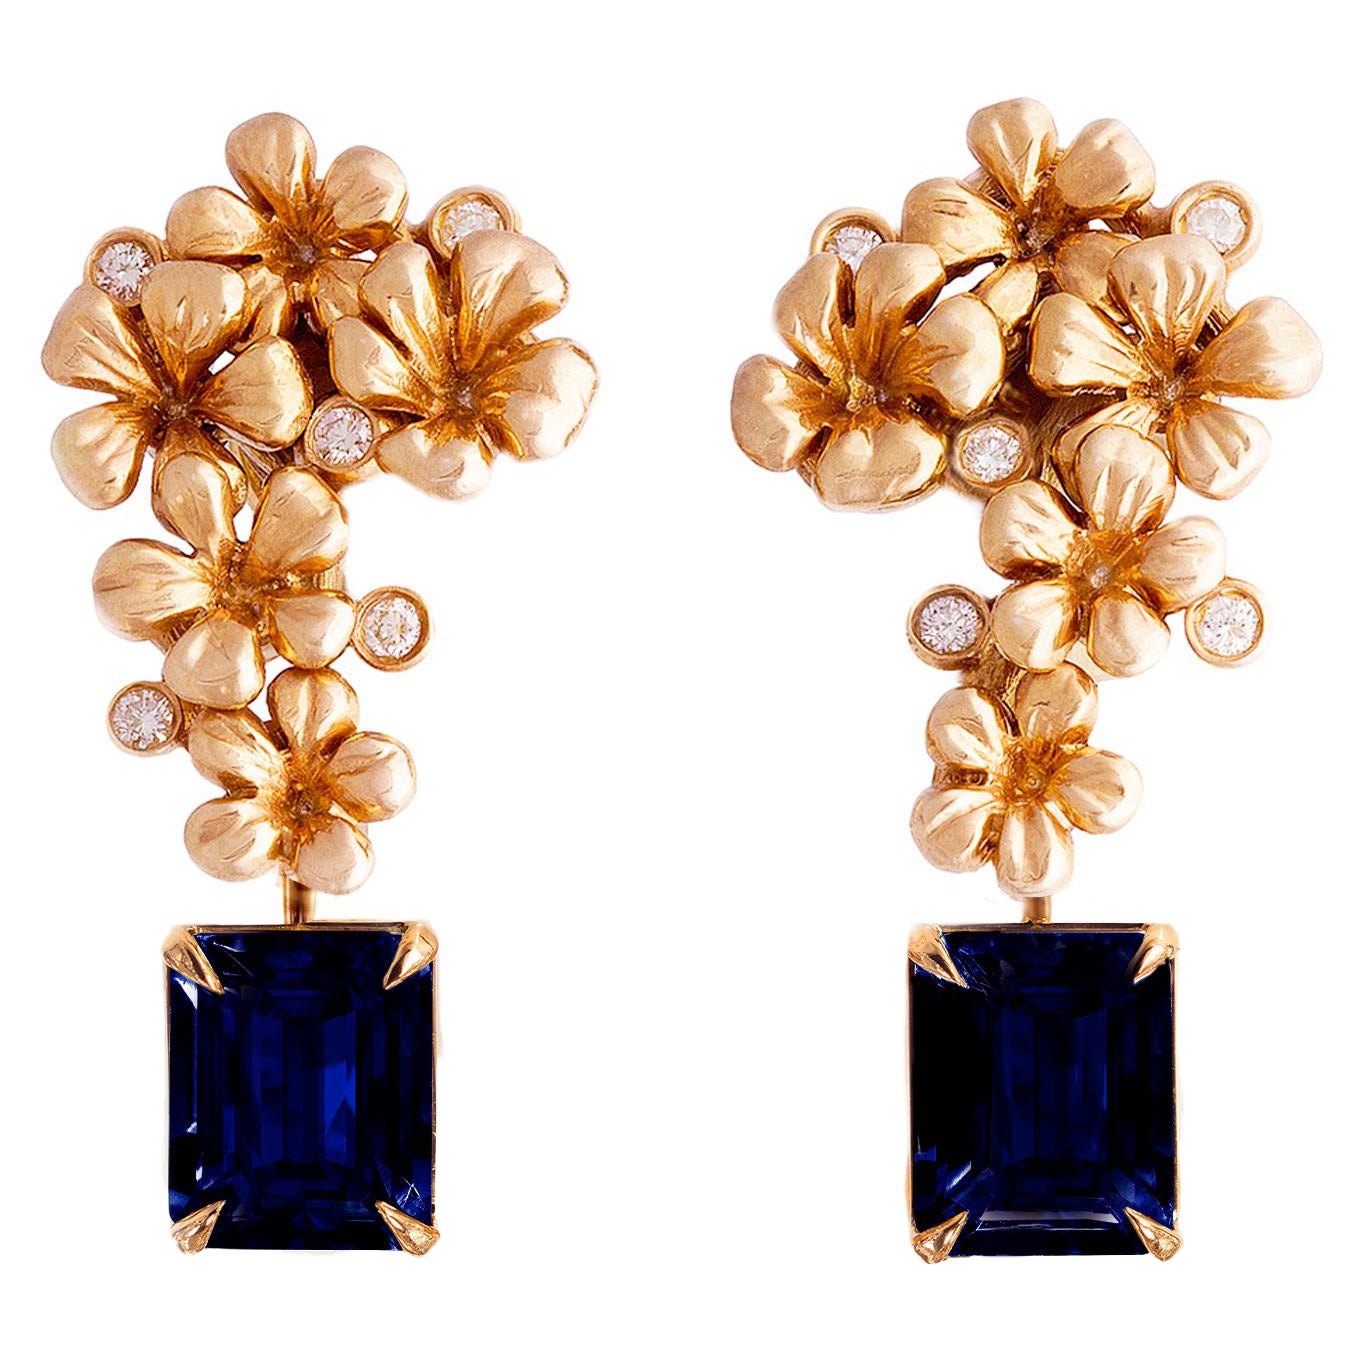 Boucles d'oreilles contemporaines en or rose dix-huit carats avec saphirs naturels